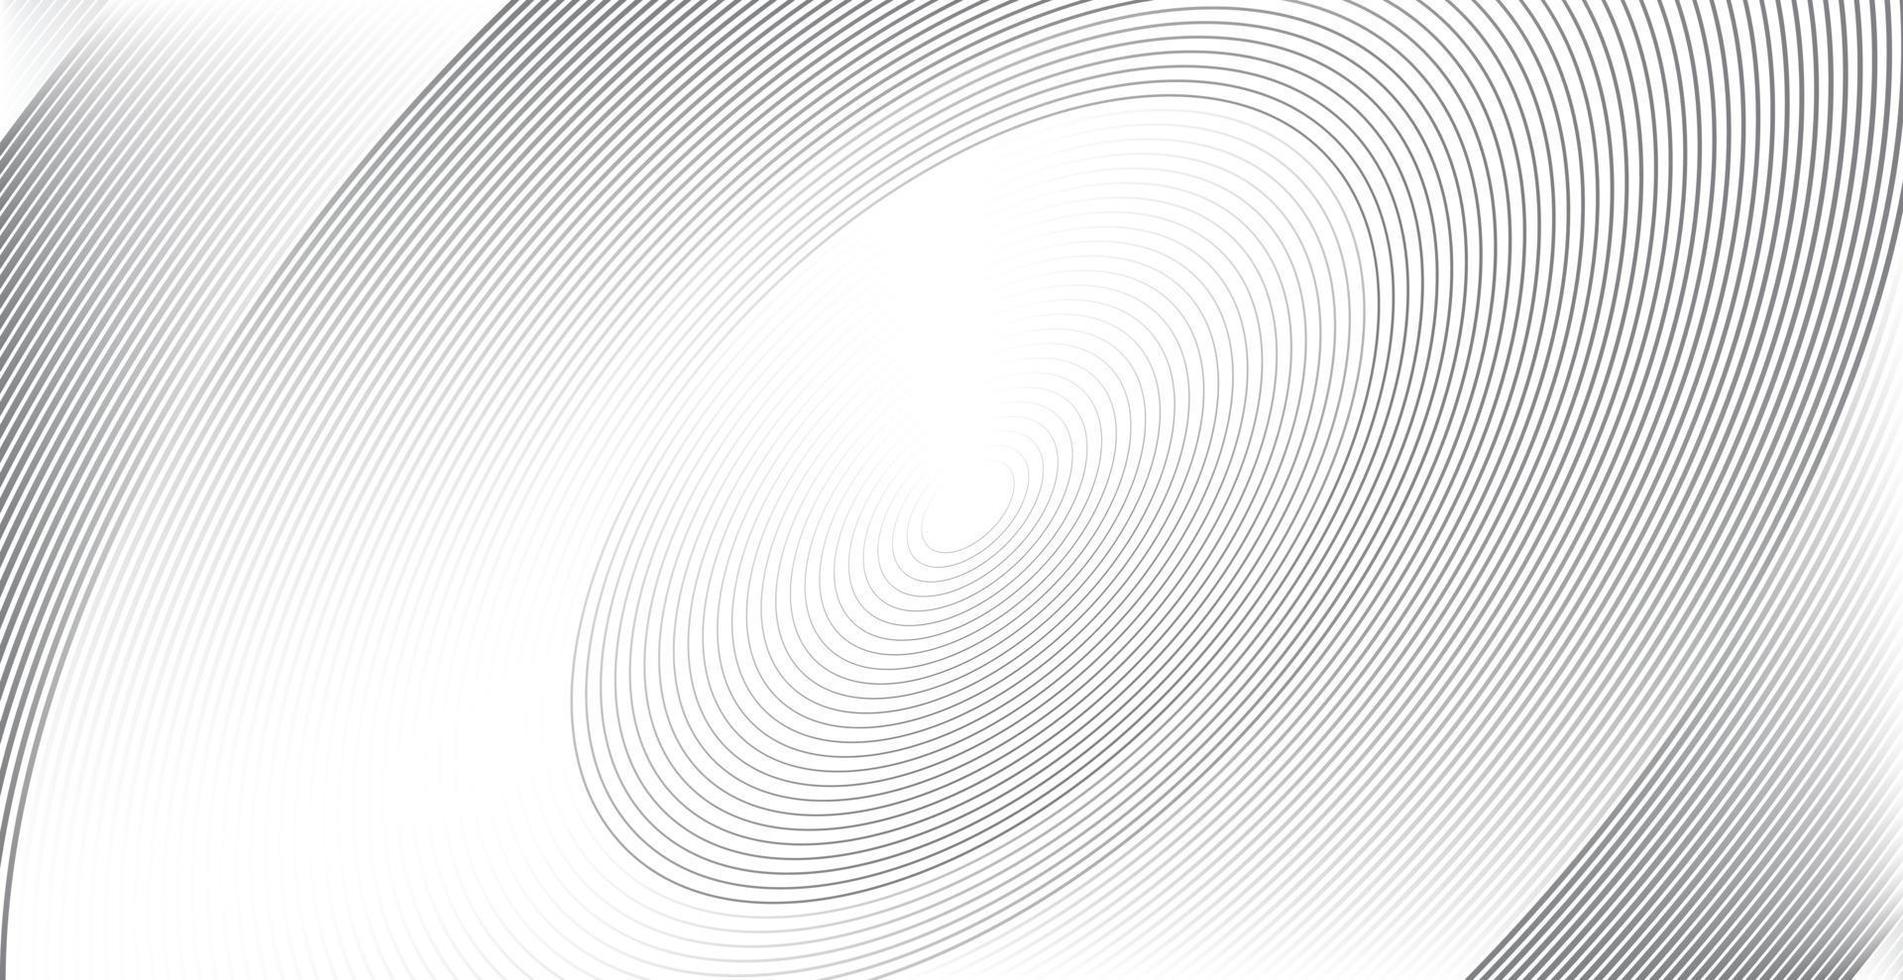 concentrische cirkel voor geluidsgolf. abstracte cirkel lijnpatroon vector